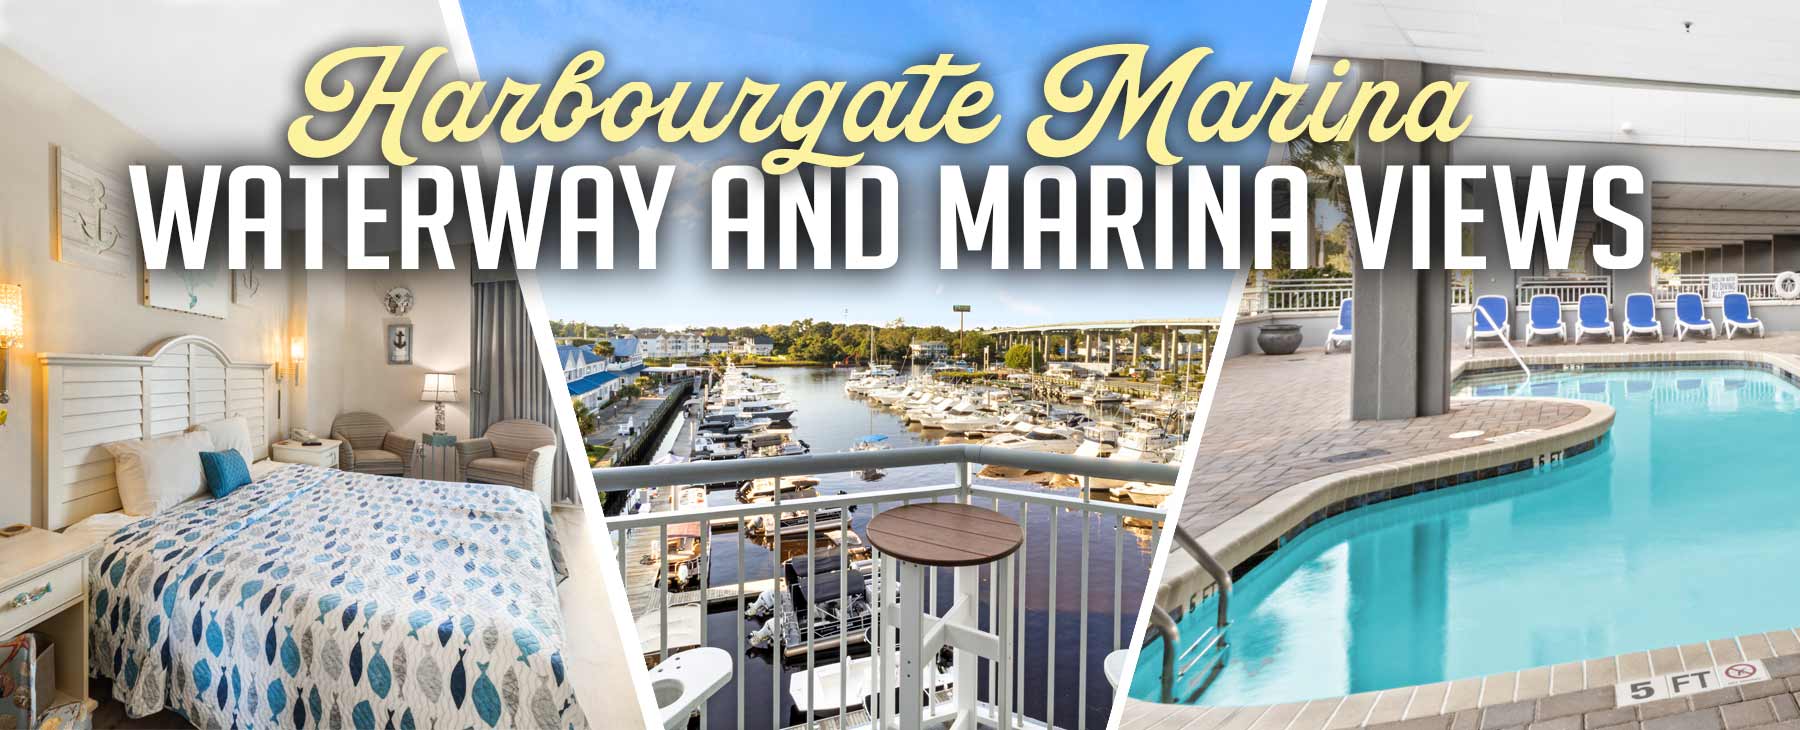 Harbourgate Marina - Waterway and Marina Views